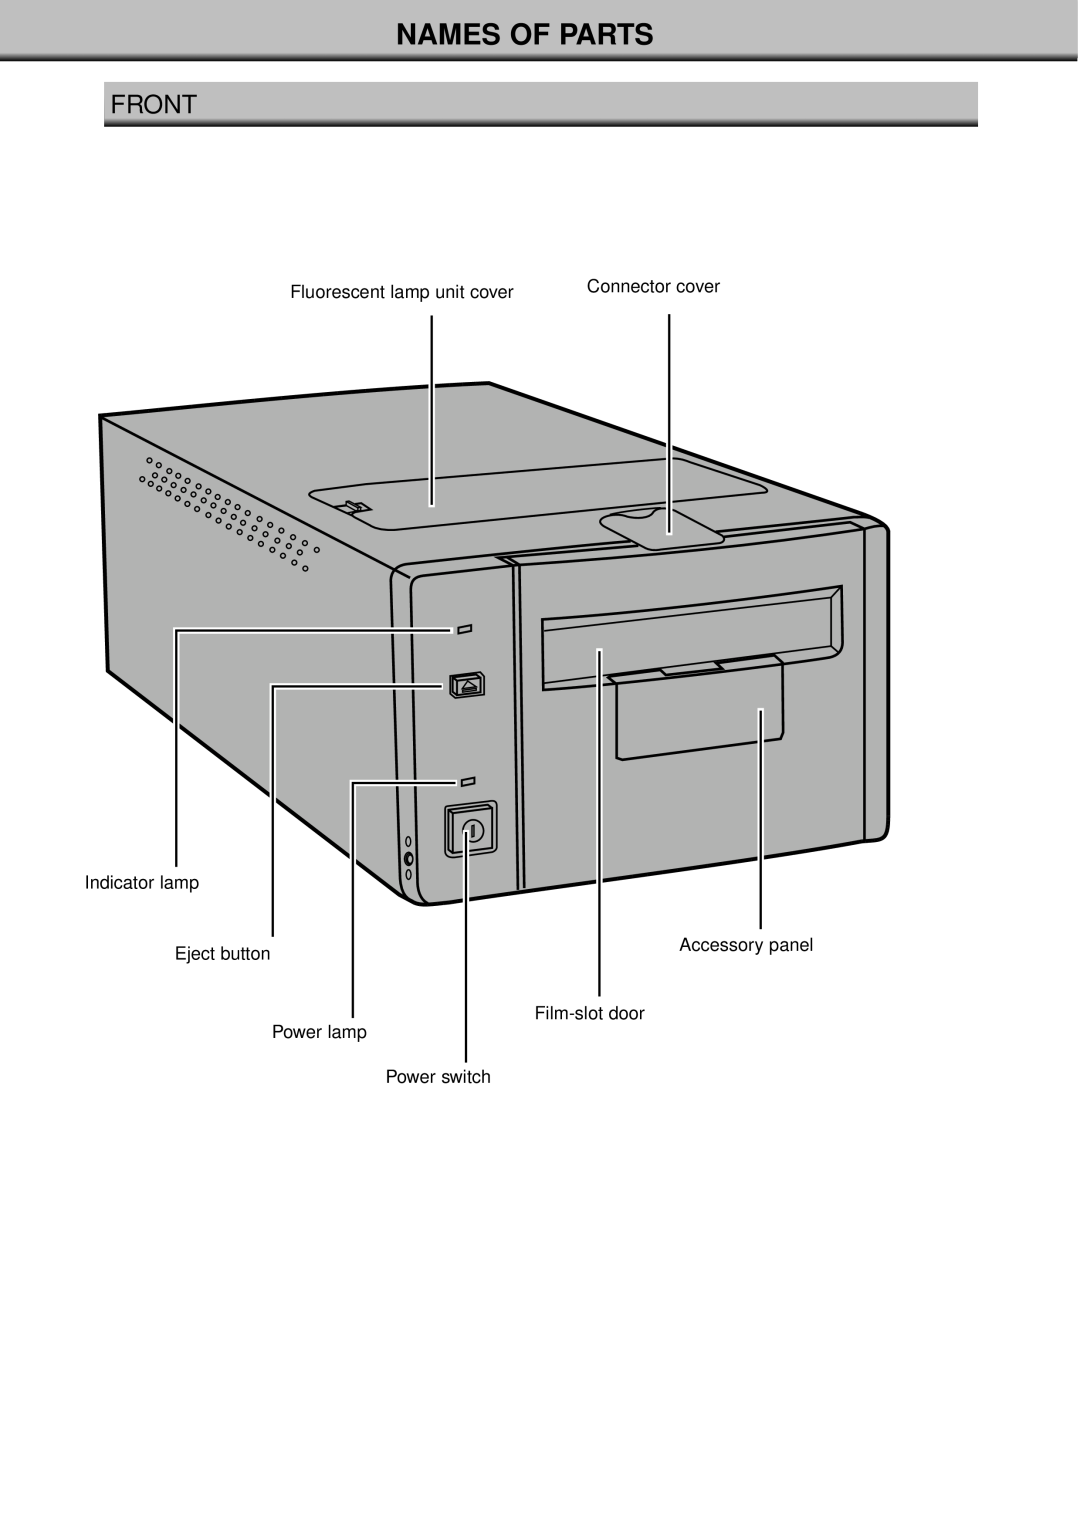 Konica Minolta II manual Names Of Parts, Front 